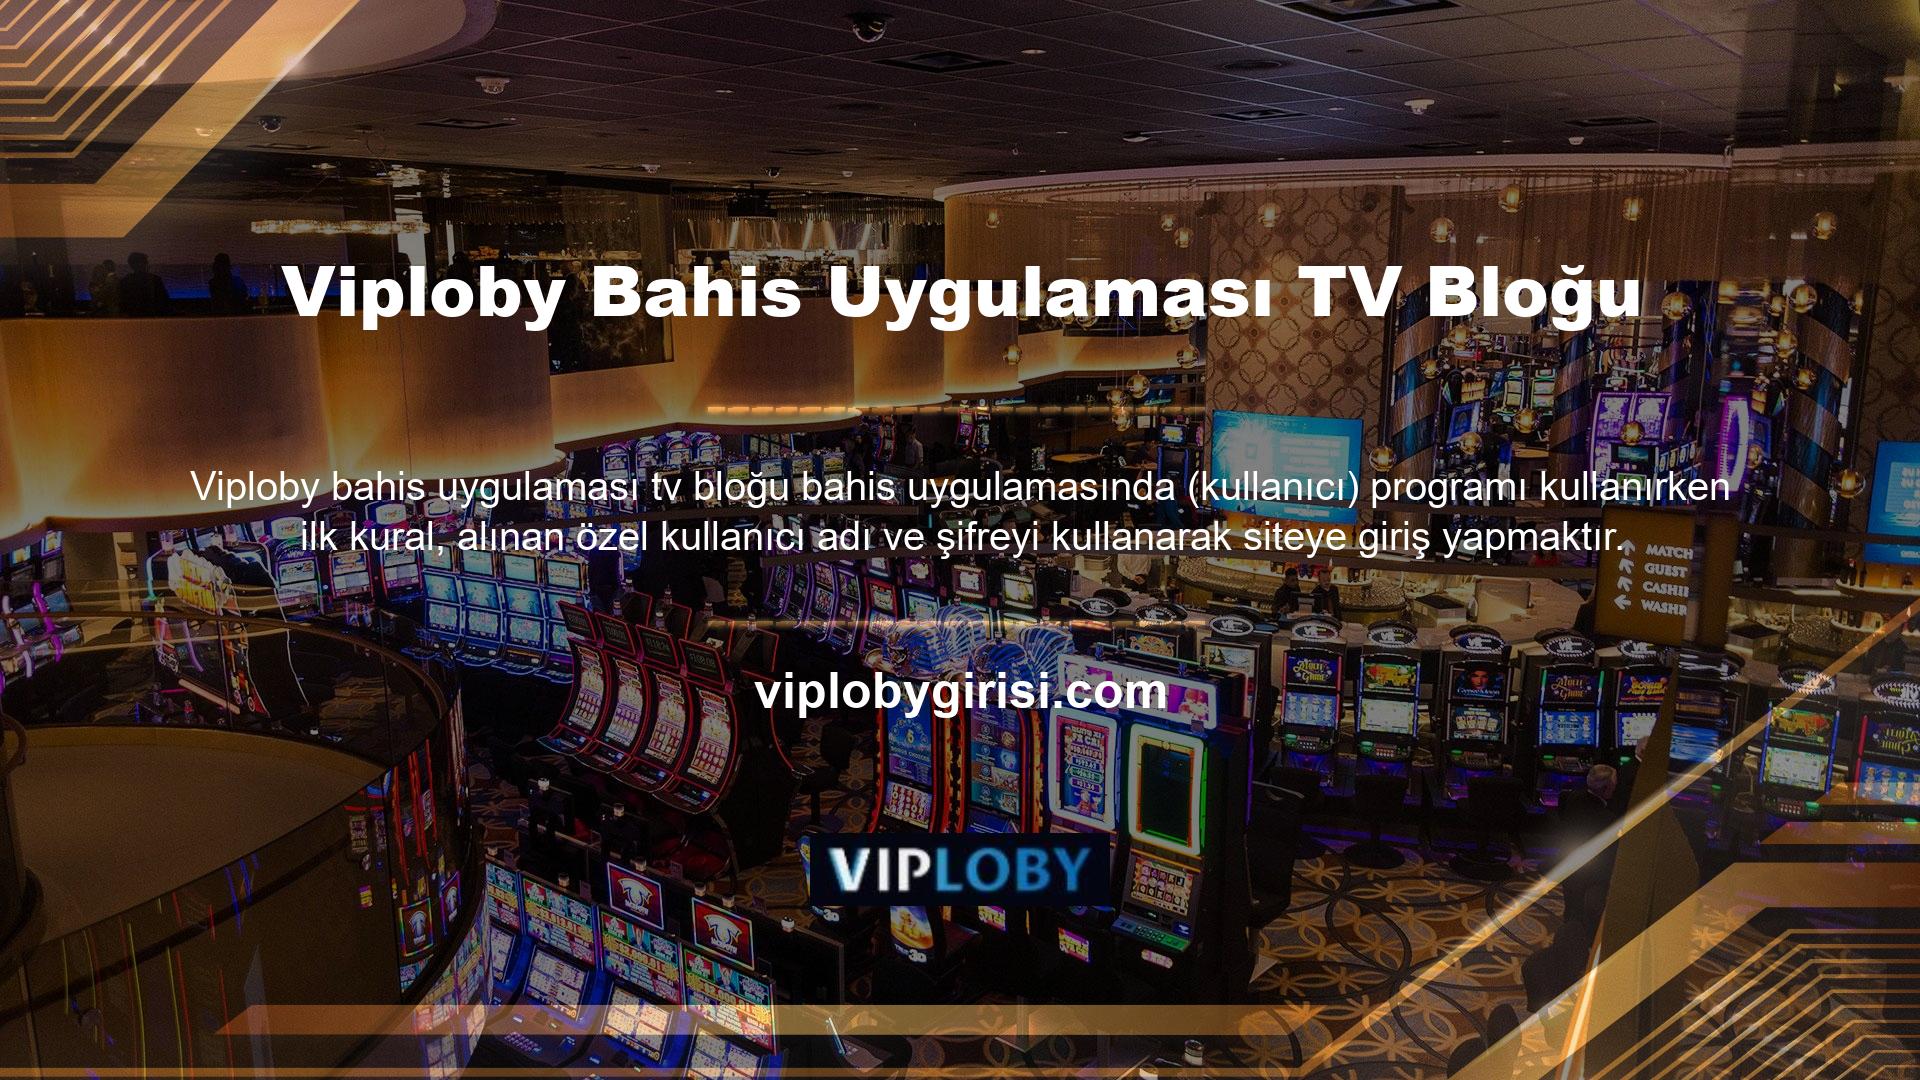 Bu kullanıcı adı ve şifreler Viploby bahis uygulaması TV Blok kullanıcılarına özel olarak atanmıştır ve oldukça önemlidir